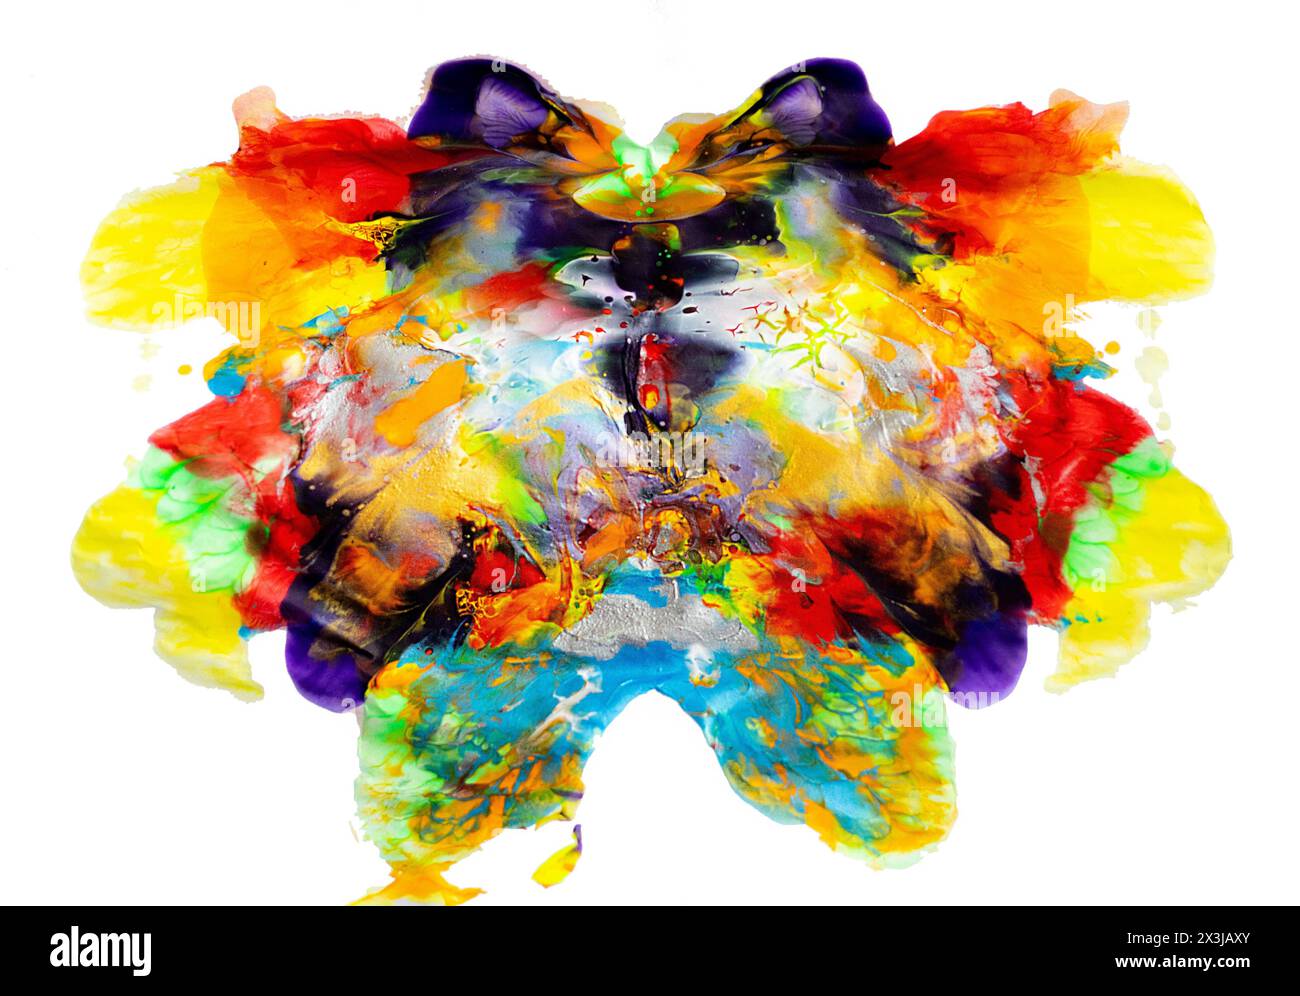 Impressionistische Wasserfarbe Kunst fließender Schmetterling mehrfarbige Wasserszene Stockfoto